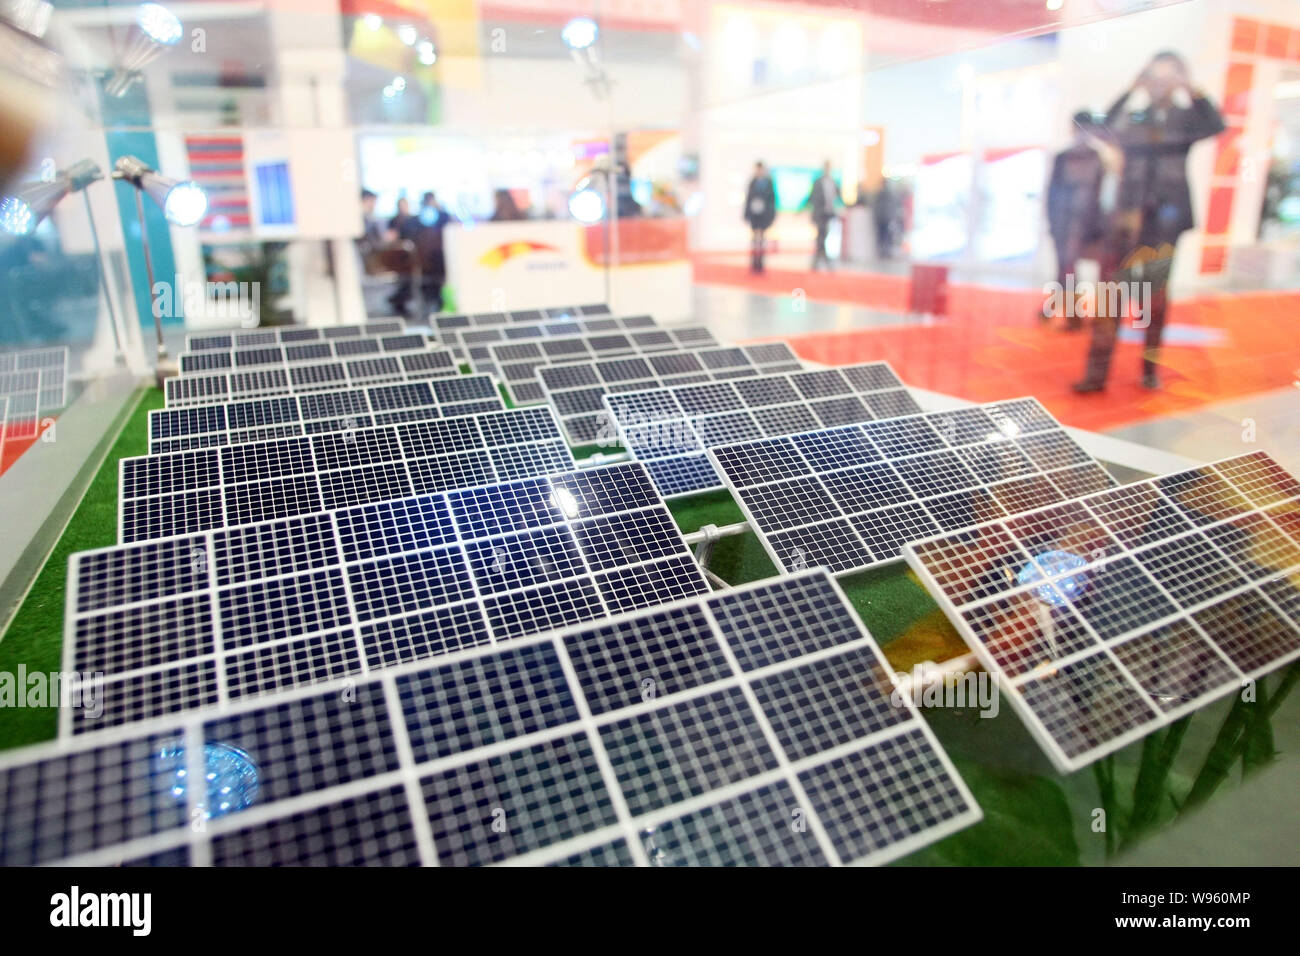 Modelos de paneles solares son vistos en la pantalla en la 7ª Feria de la  Industria Fotovoltaica AsiaSolar 2012 en Shanghai, China, 21 de marzo de  2012. Más de 8 Fotografía de stock - Alamy